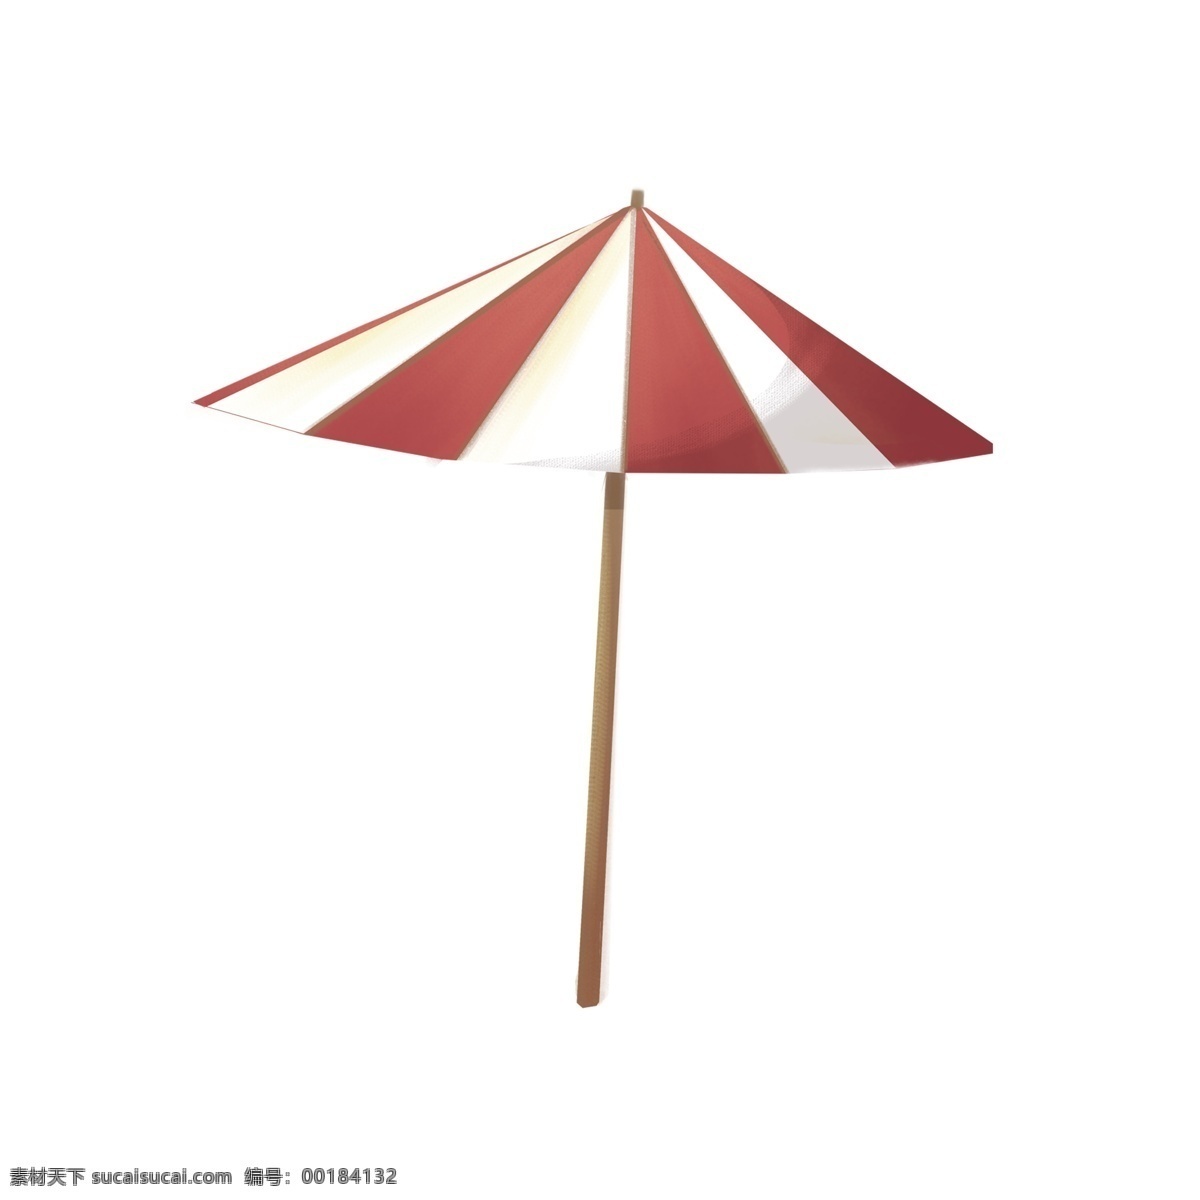 一把 红 白 相见 大 伞 免 扣 图 卡通 伞免扣图 打伞免扣图 红色的伞 红白相见的 大伞 免扣图